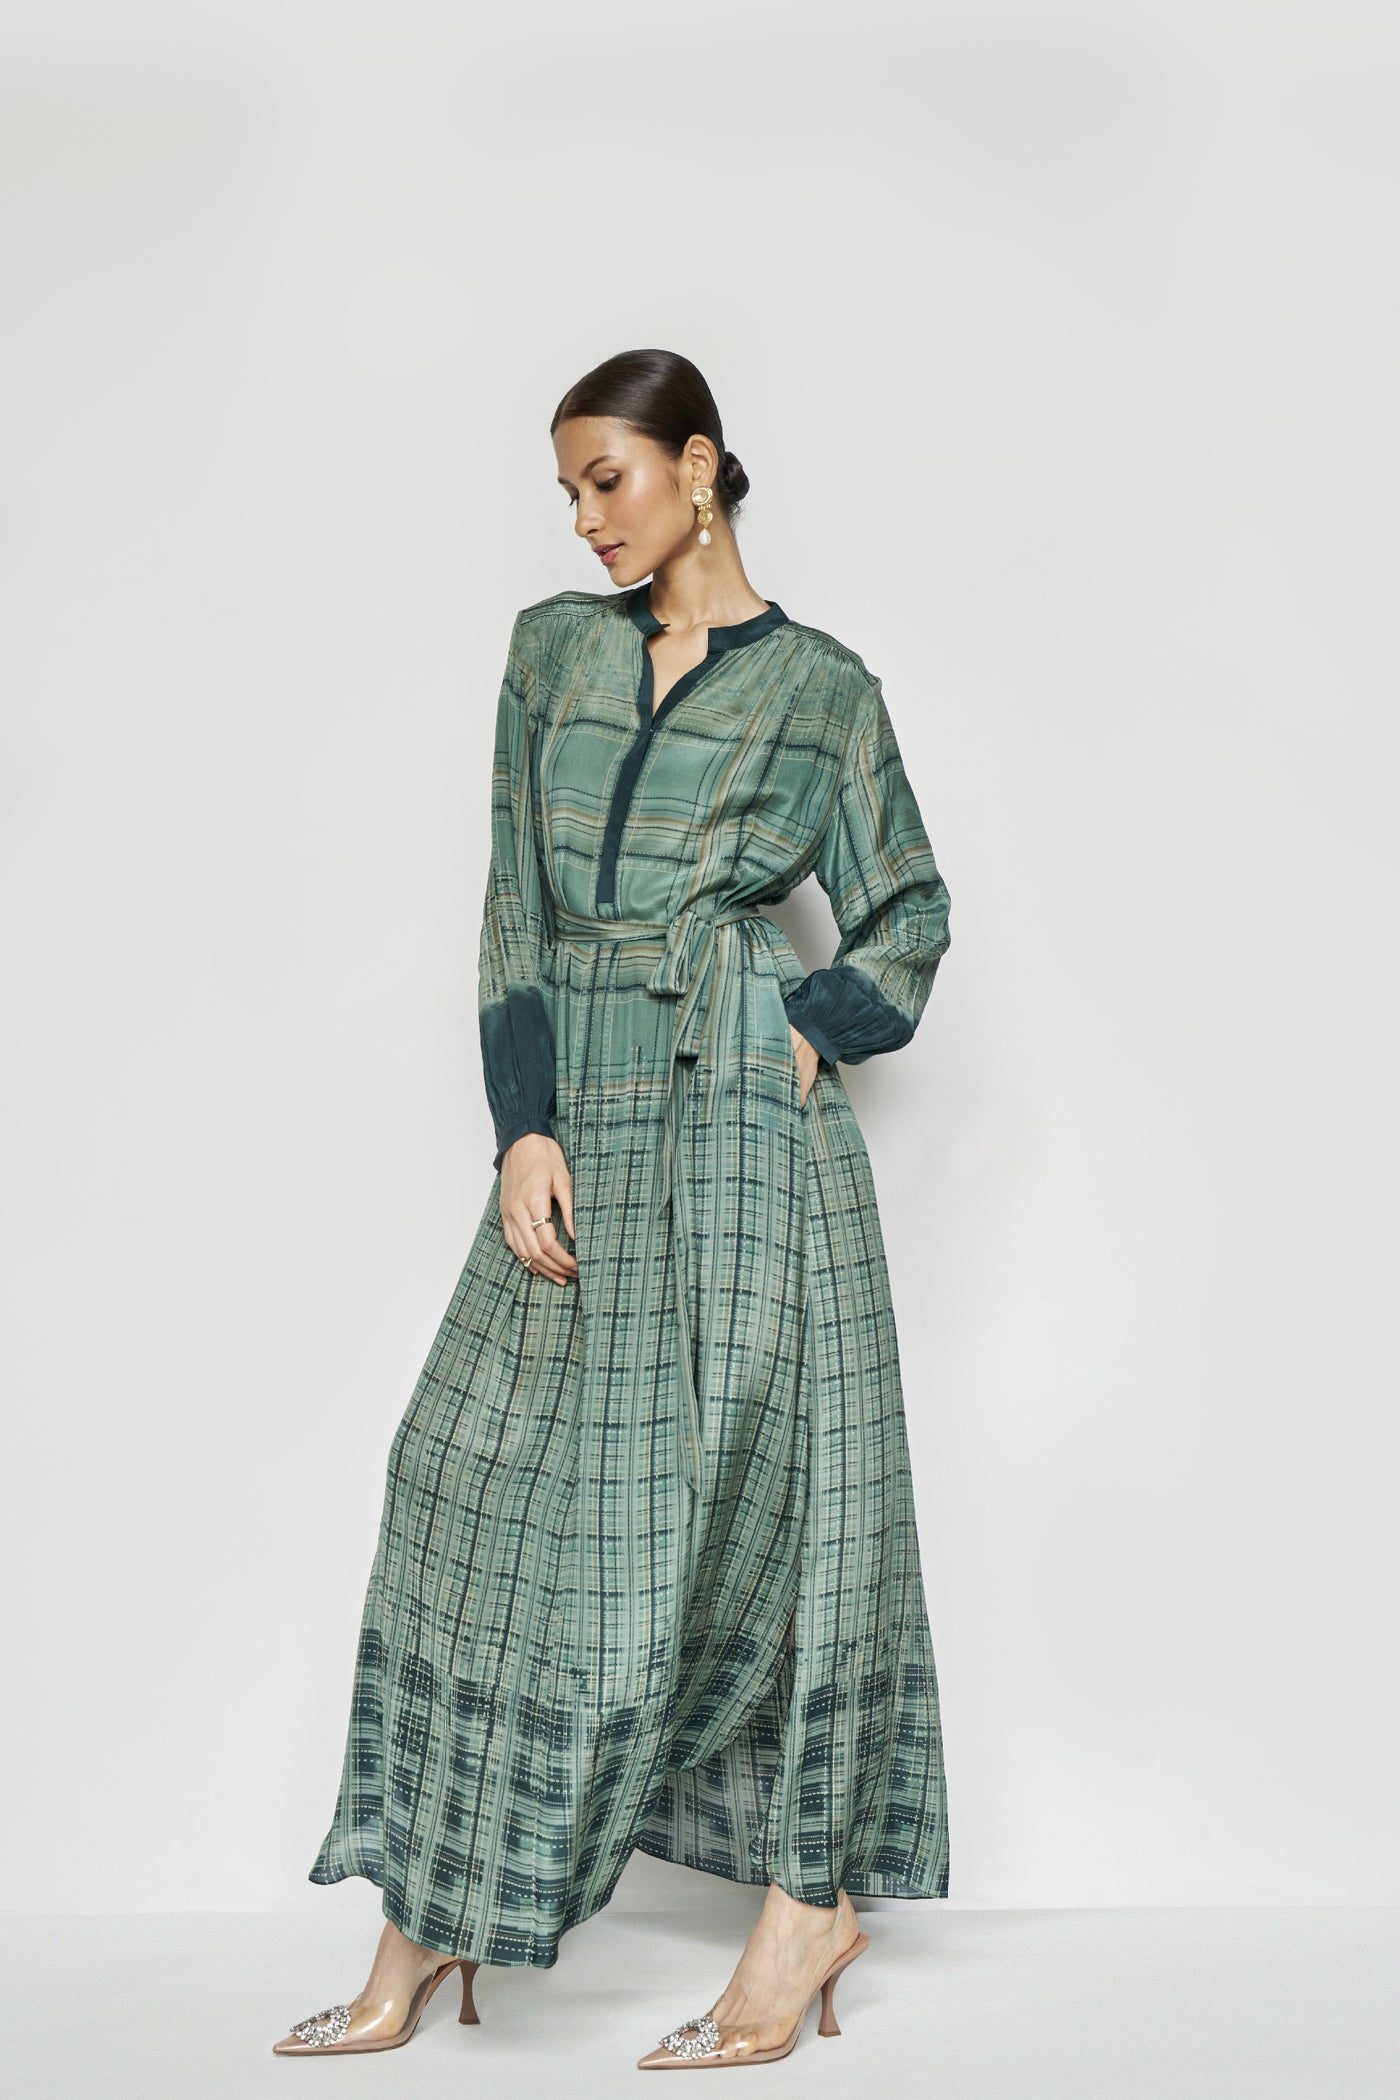 Anita Dongre Franze Kaftan Green indian designer wear online shopping melange singapore